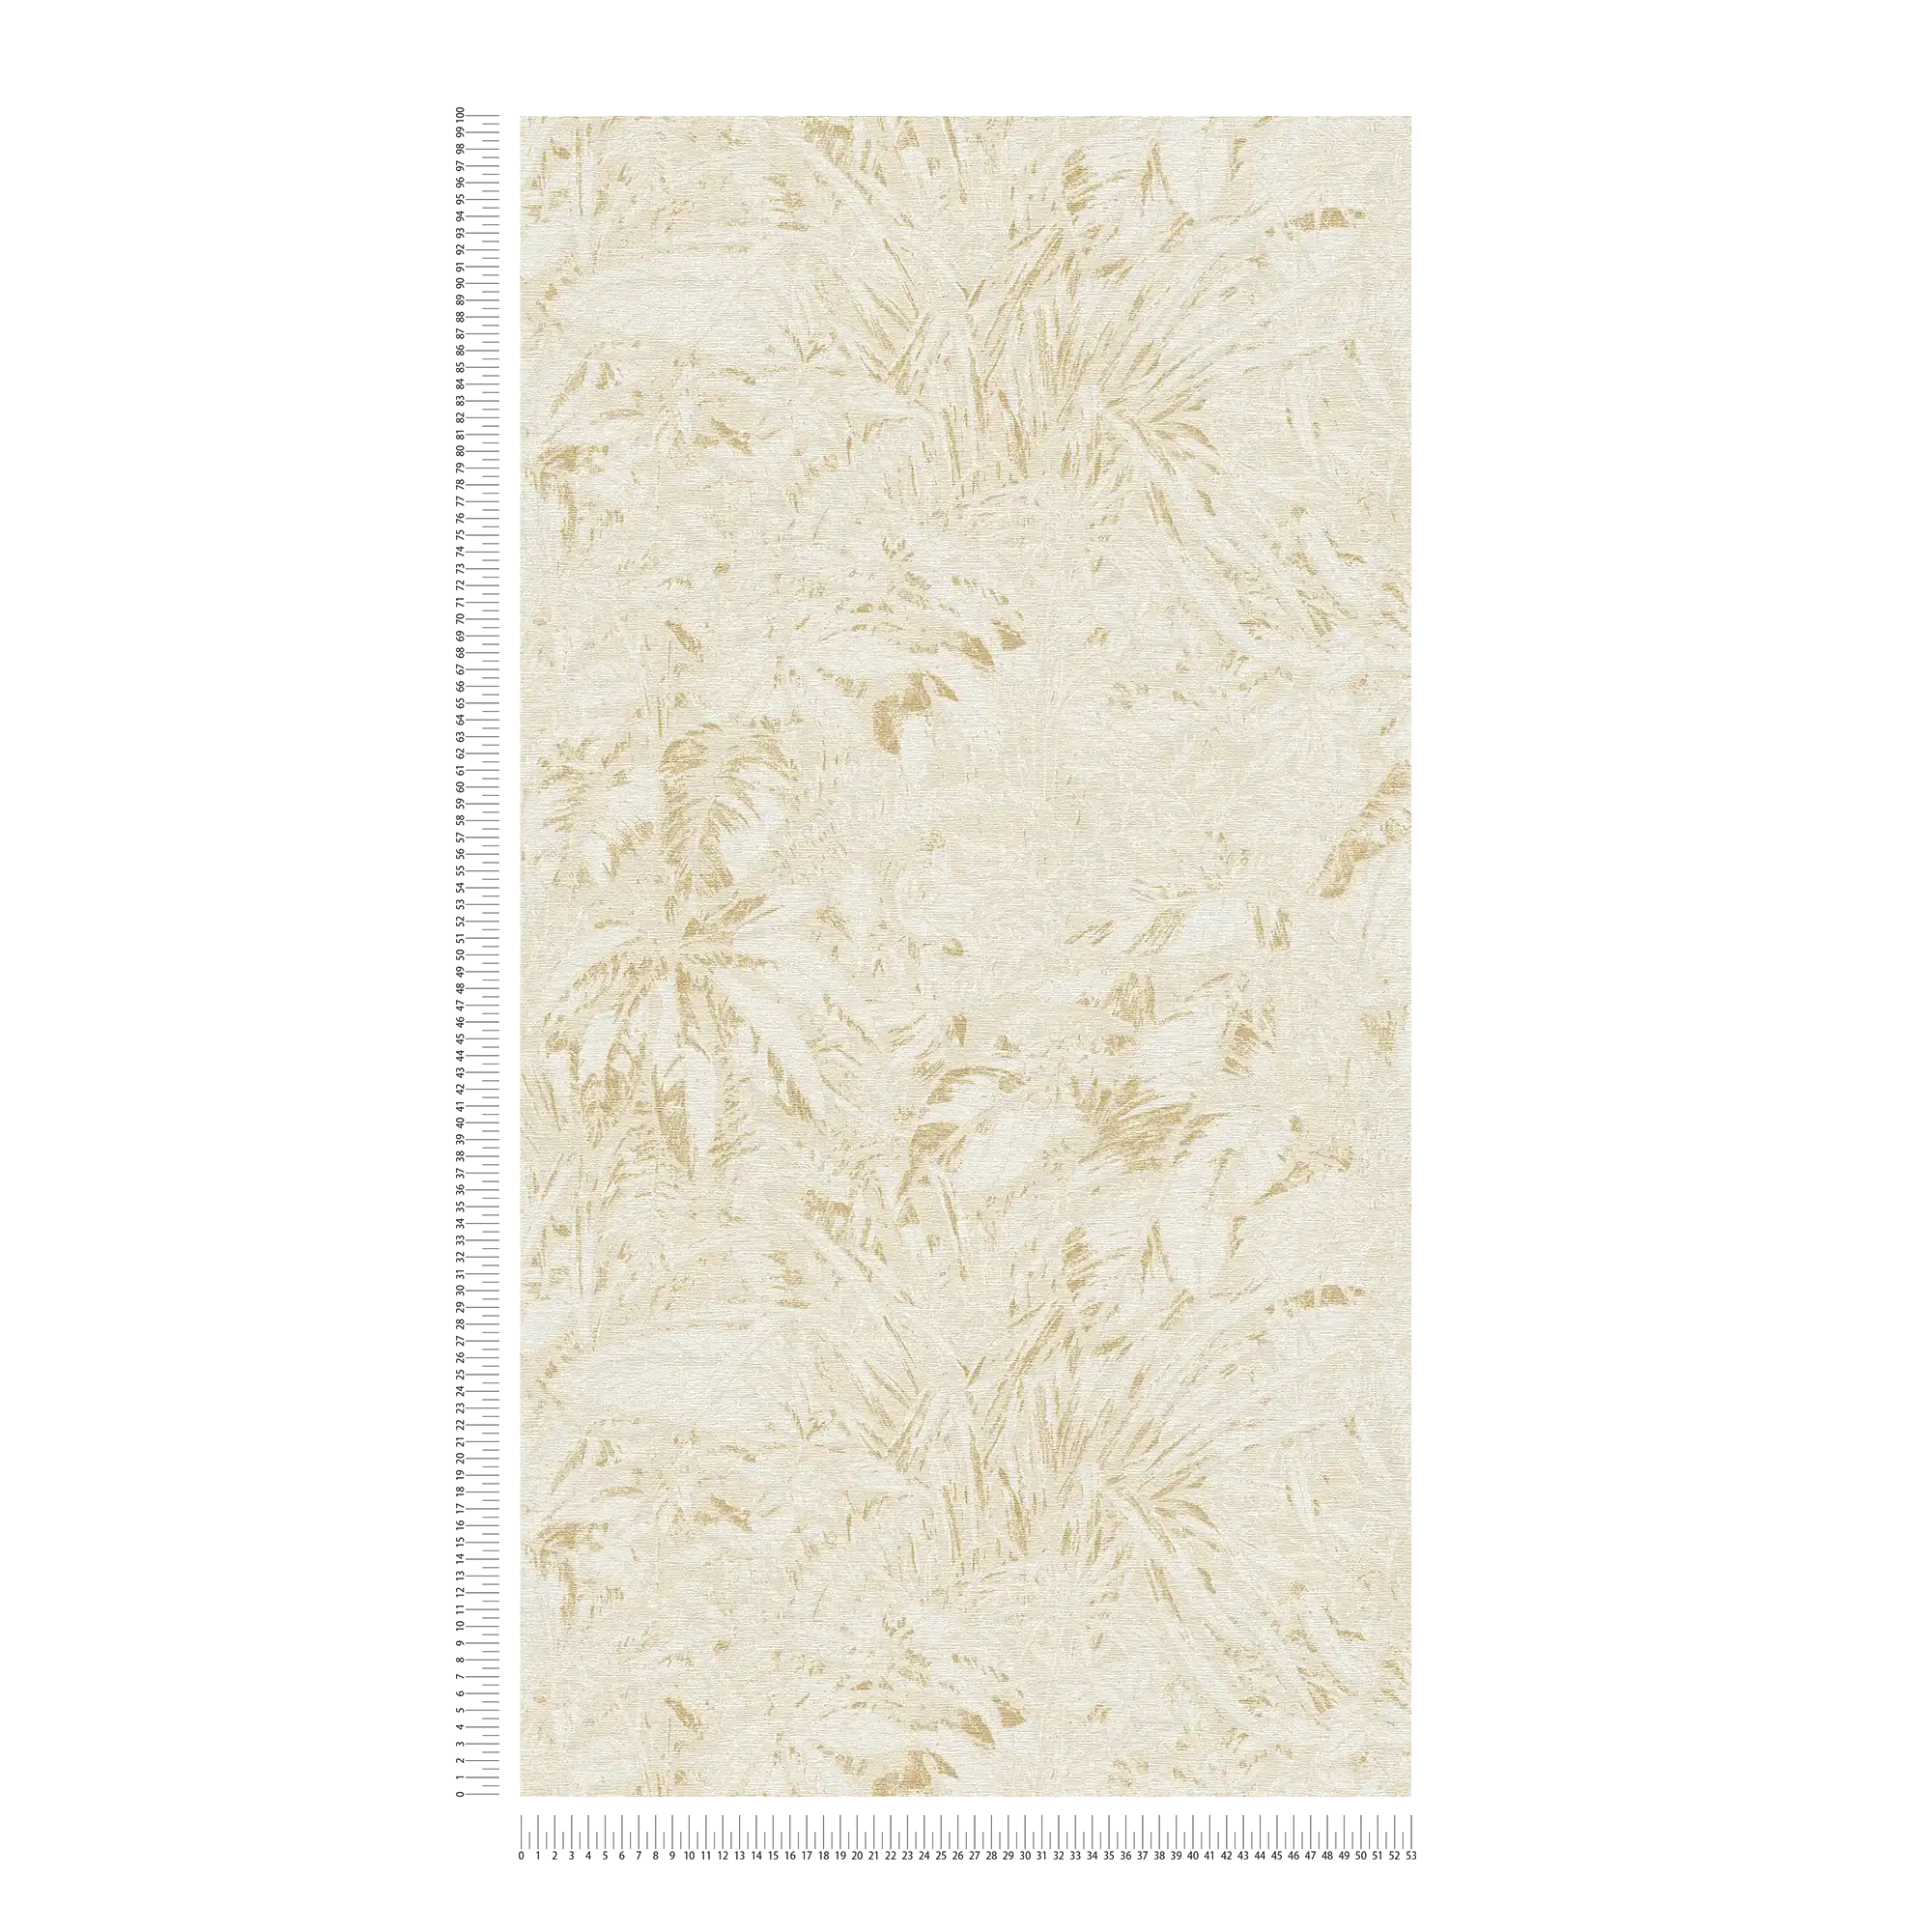             papier peint en papier jungle aux couleurs douces avec motif de feuilles - beige, blanc, or
        